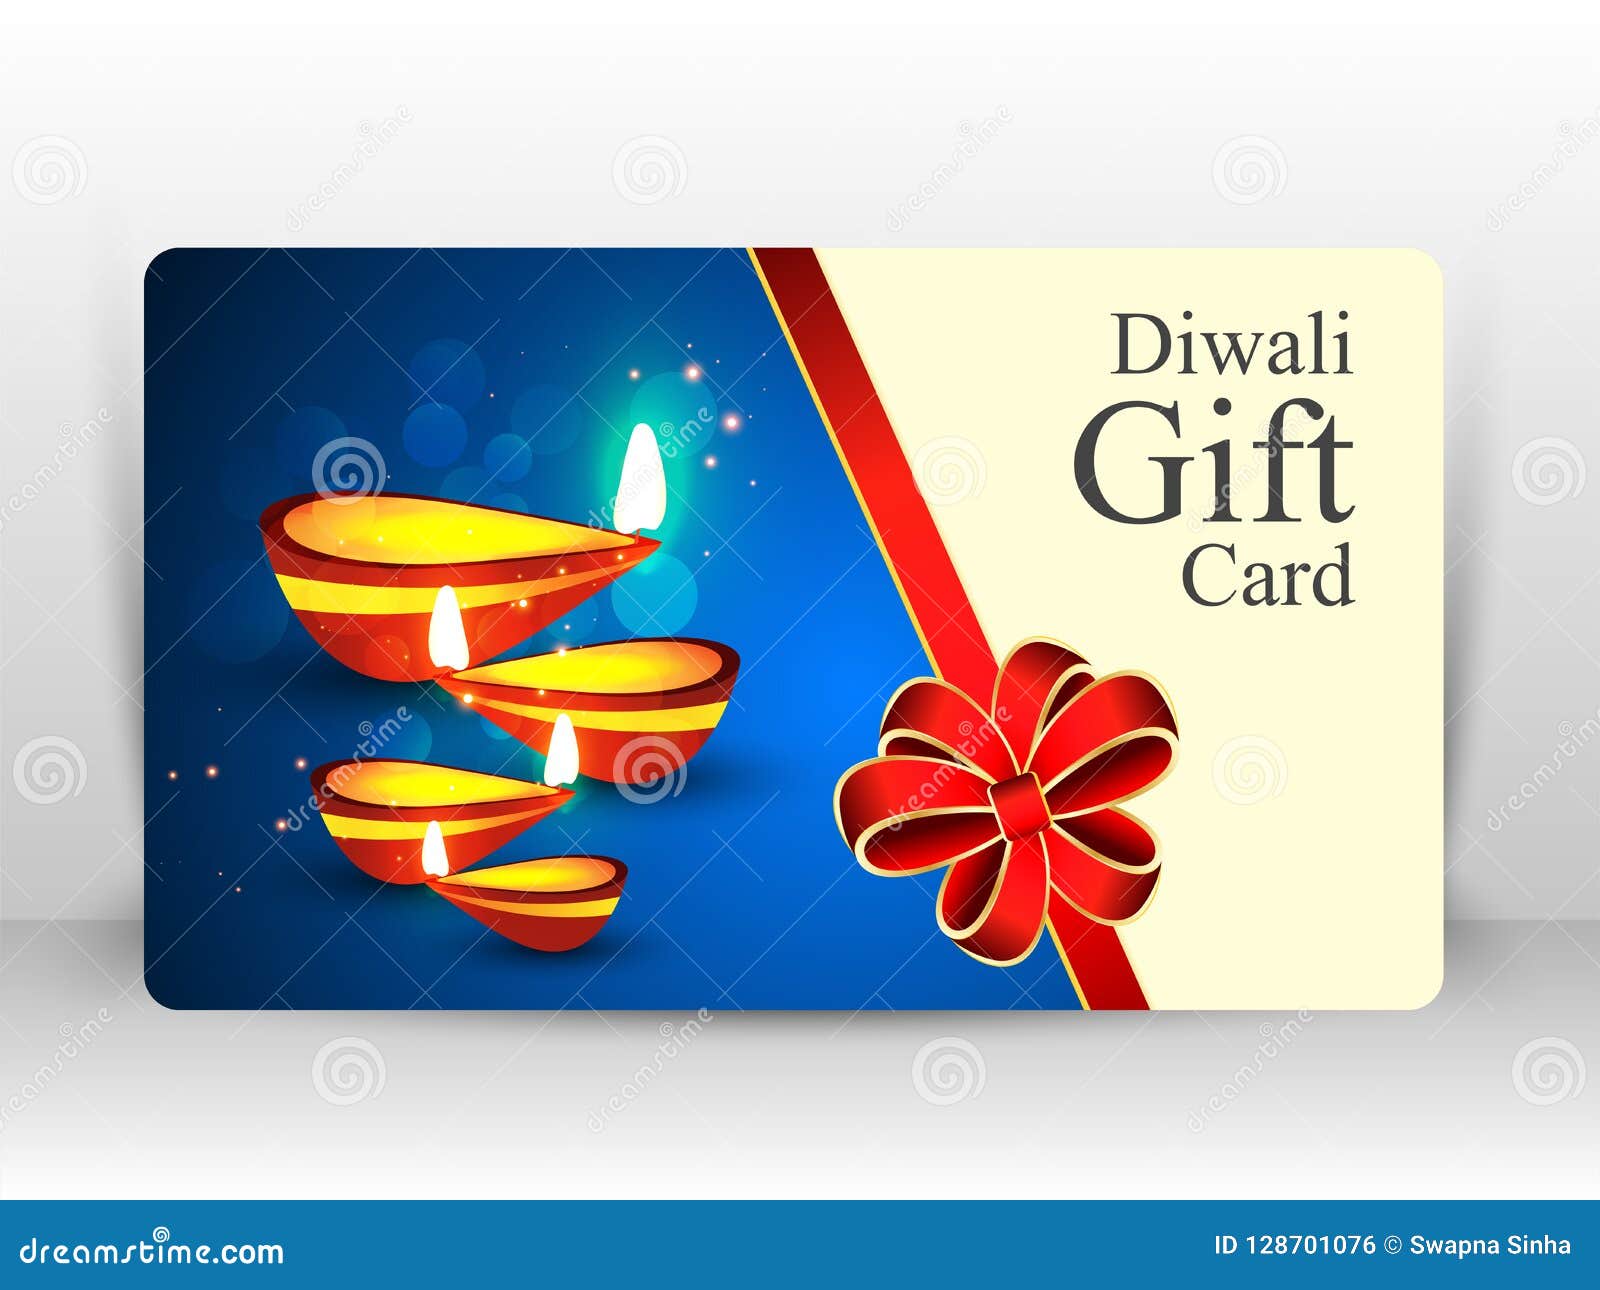 7 Diwali gift card ideas  diwali gifts diwali happy diwali